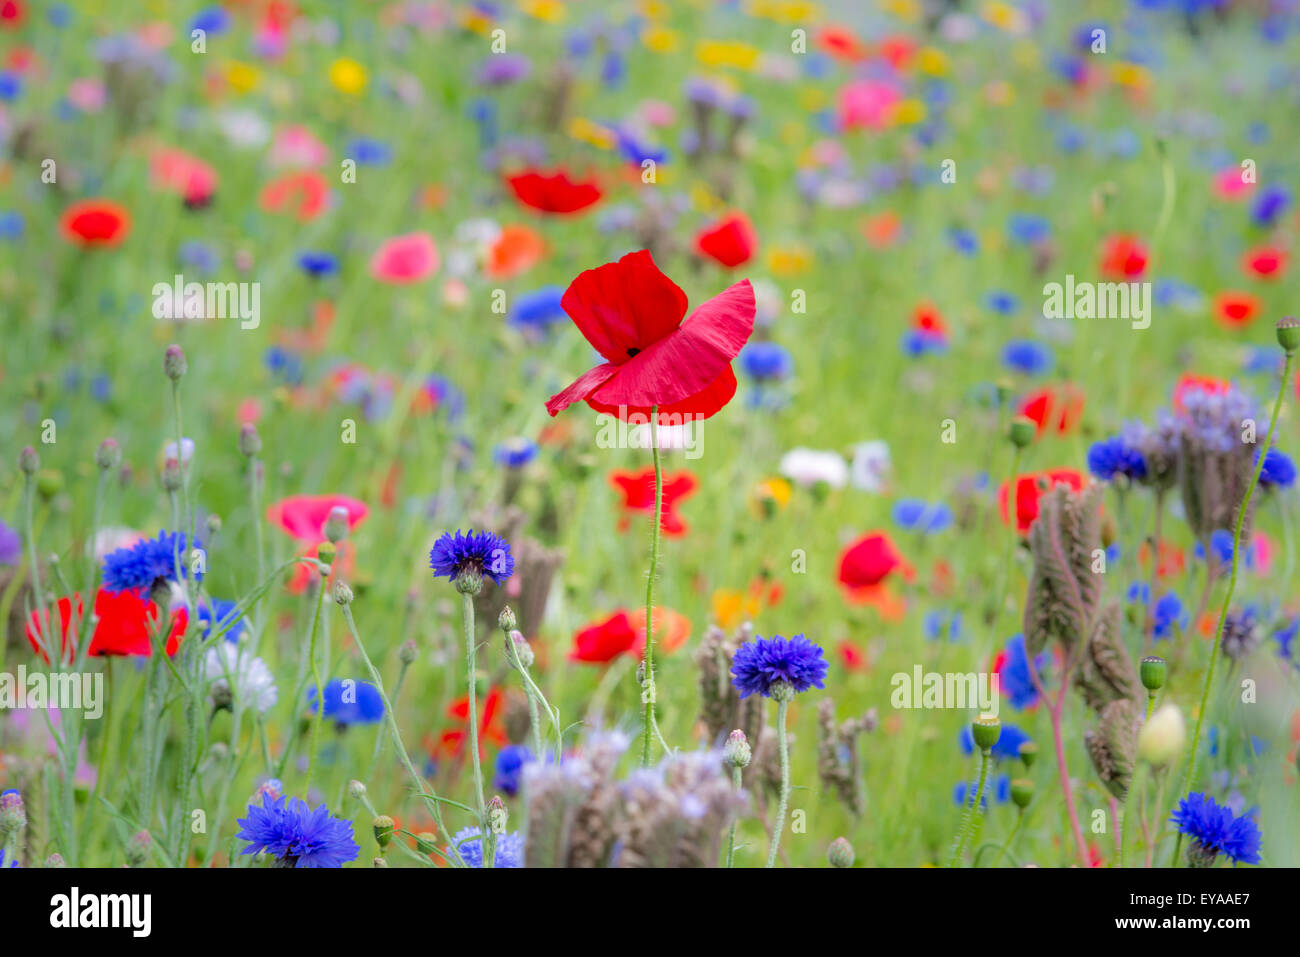 poppy, nature, red, summer, floral, feld, field, flower, meadow, grain, sky, landscape, poppy flowers, grain field, poppy bloom, Stock Photo